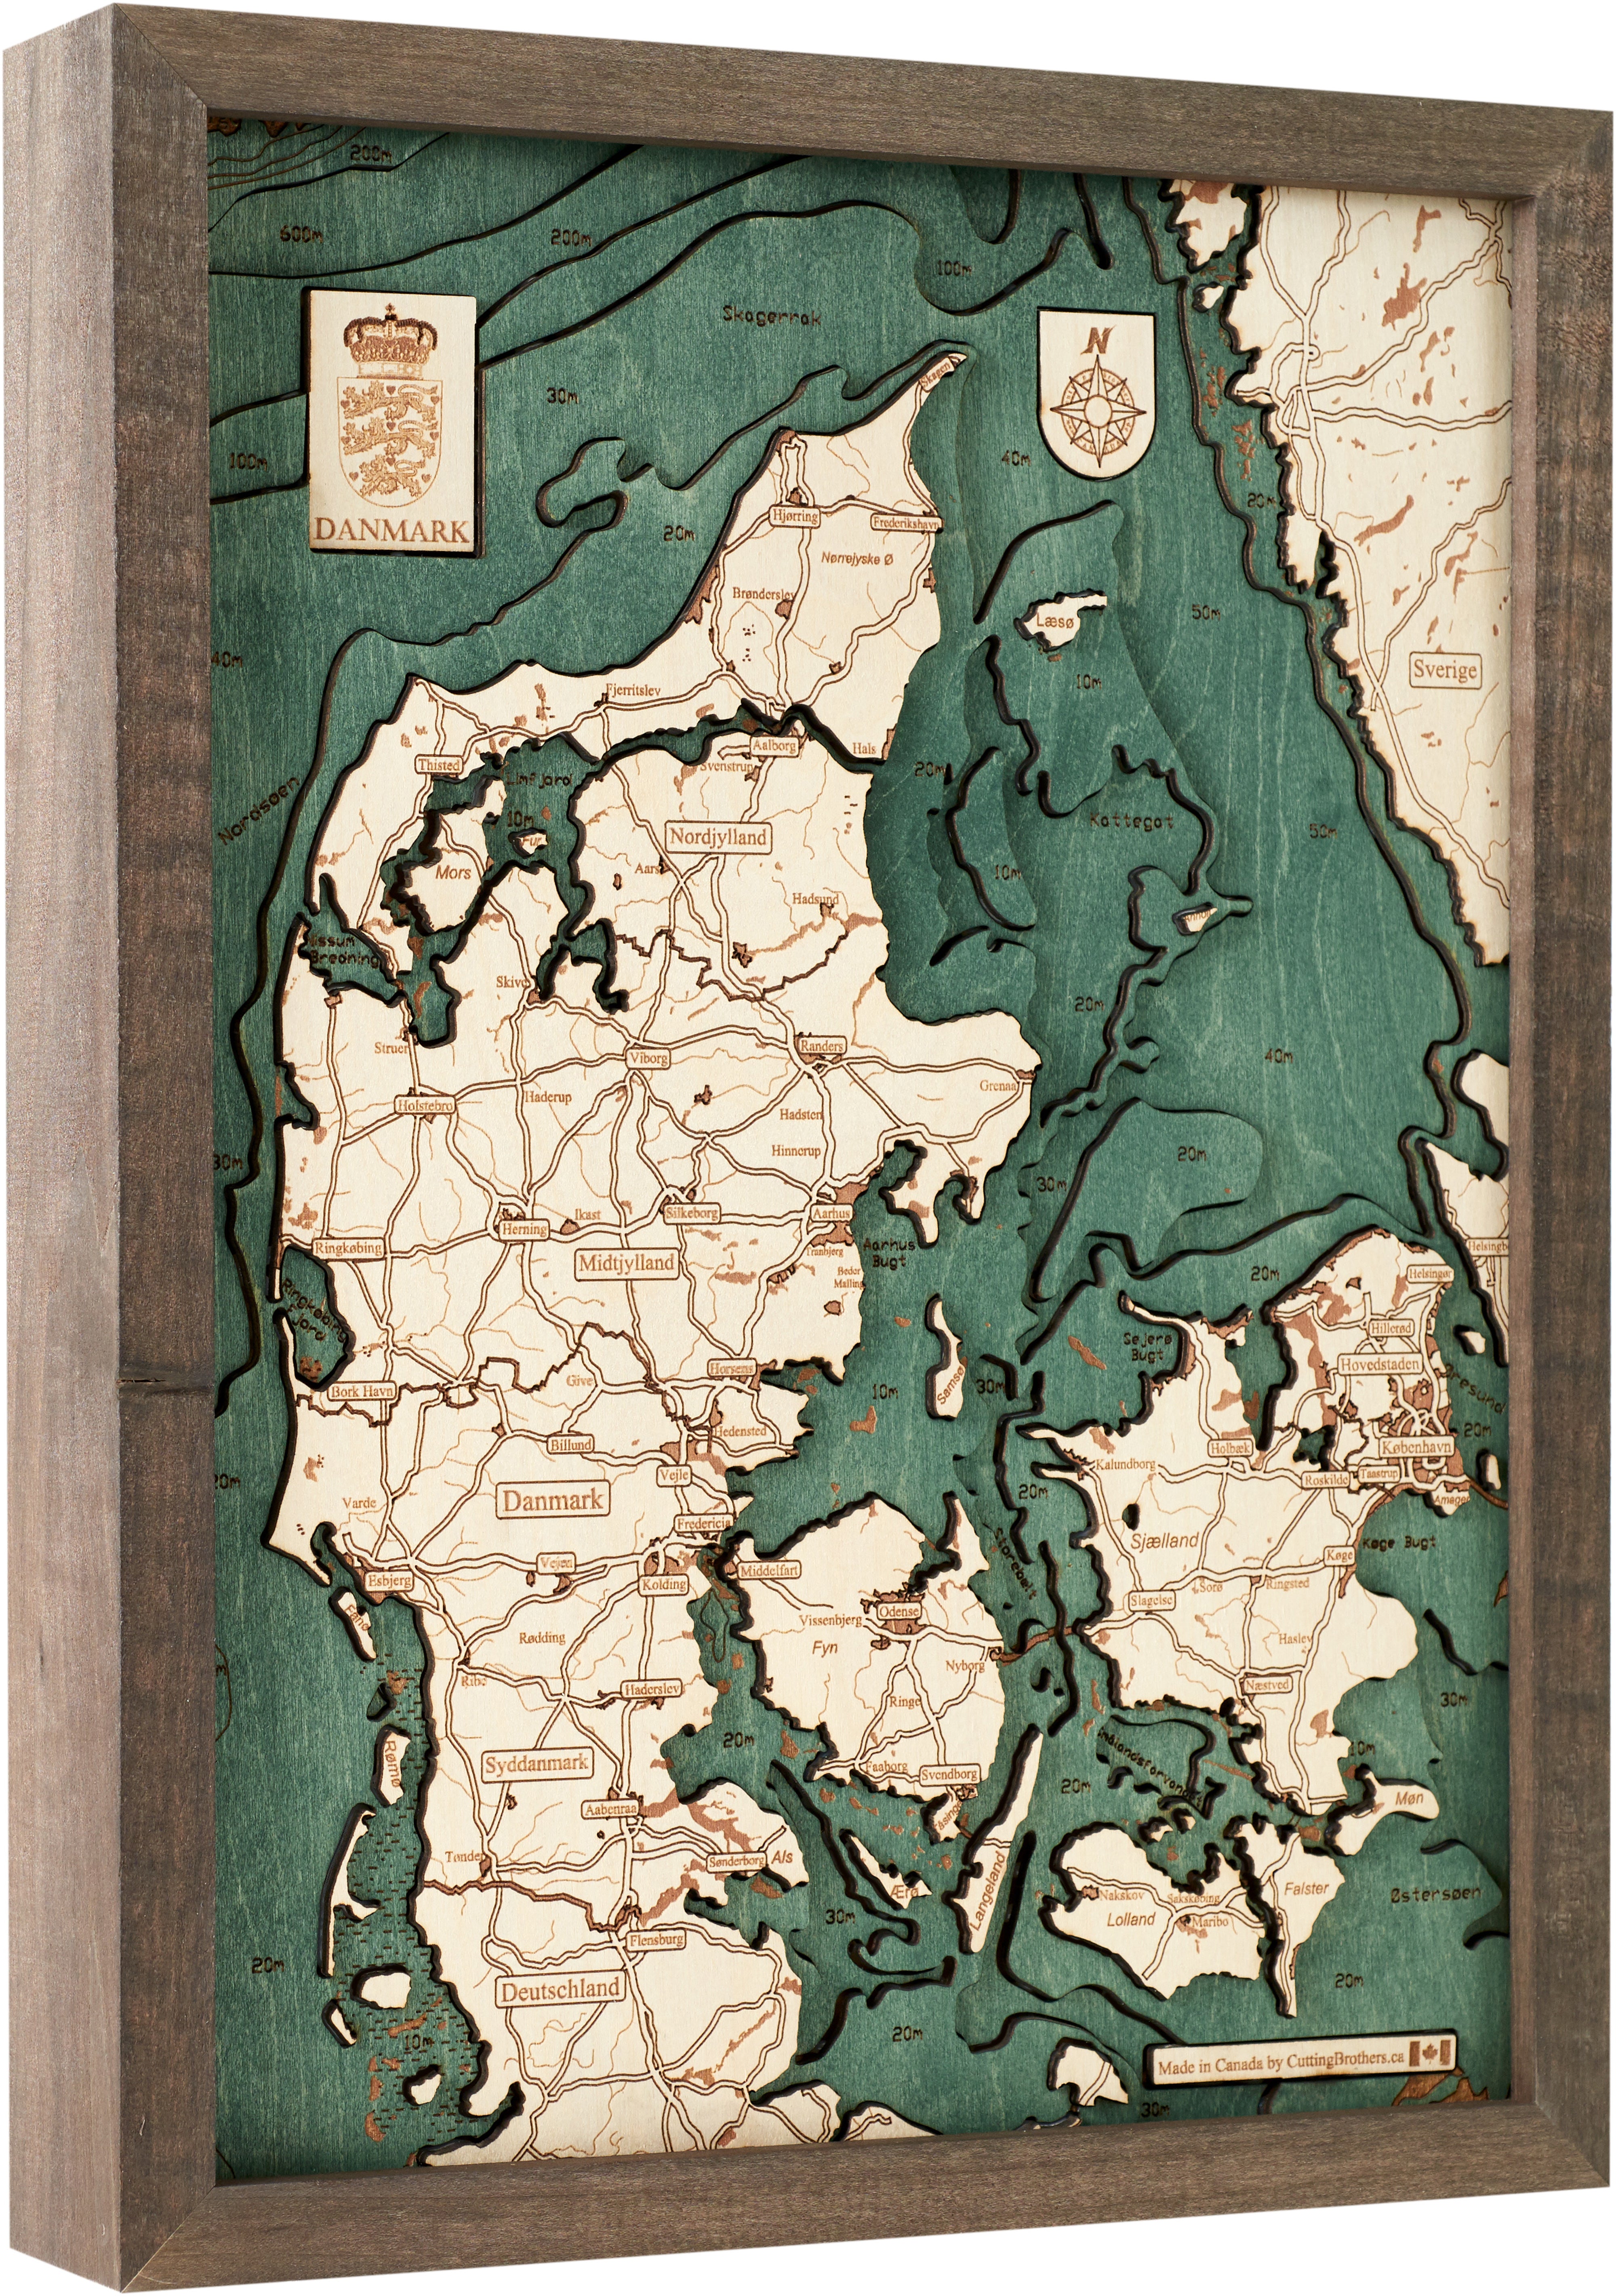 DENMARK 3D Wooden Wall Map - Version S